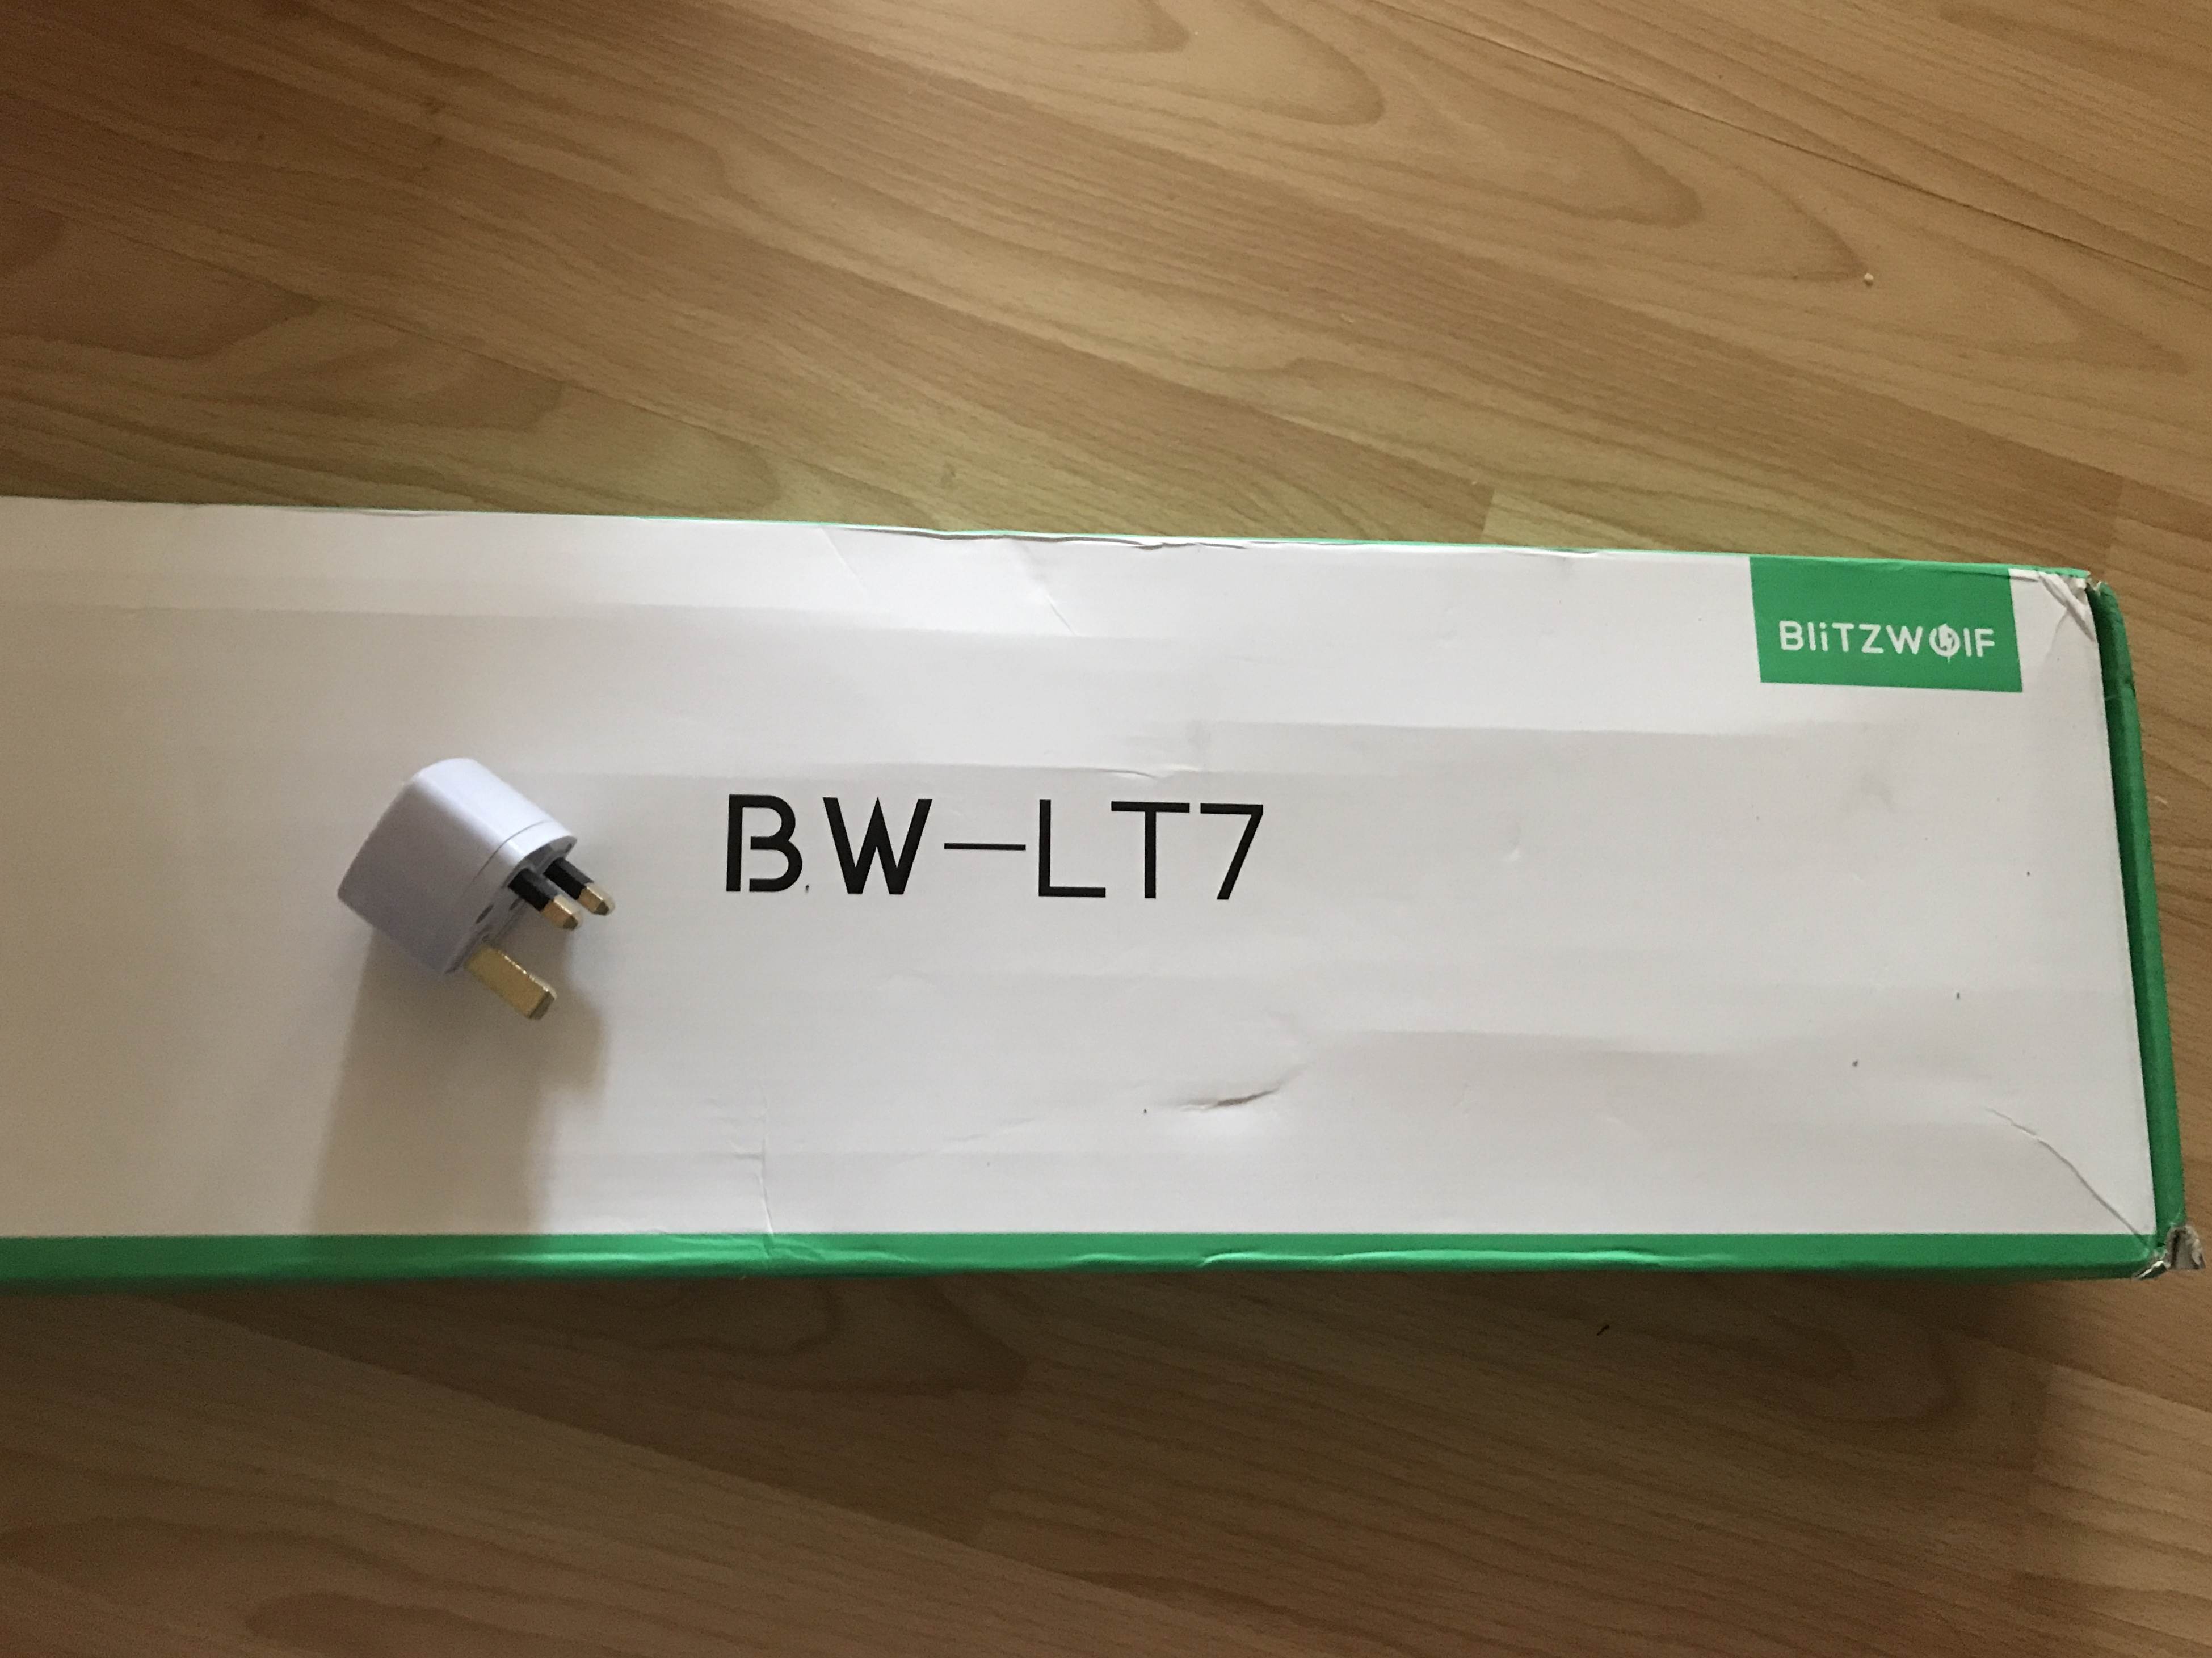 Lampka biurkowa z opcją bezprzewodowego ładowania Blitzwolf BW-LT7 - test i recenzja akcesoria   Dawno, dawno temu miałem przyjemność używać pierwszej lampki biurkowej firmy Blitzwolf. Pomimo swojej szerokiej funkcjonalności odrzucał mnie od niej jej wygląd. Na szczęście nowy model BW - LT7 wygląda zdecydowanie lepiej i ma coś czego brakuje pierwszej lampce, ponieważ LT7 w podstawce skrywa moduł bezprzewodowego ładowania oparty na standardzie Qi. IMG 2596